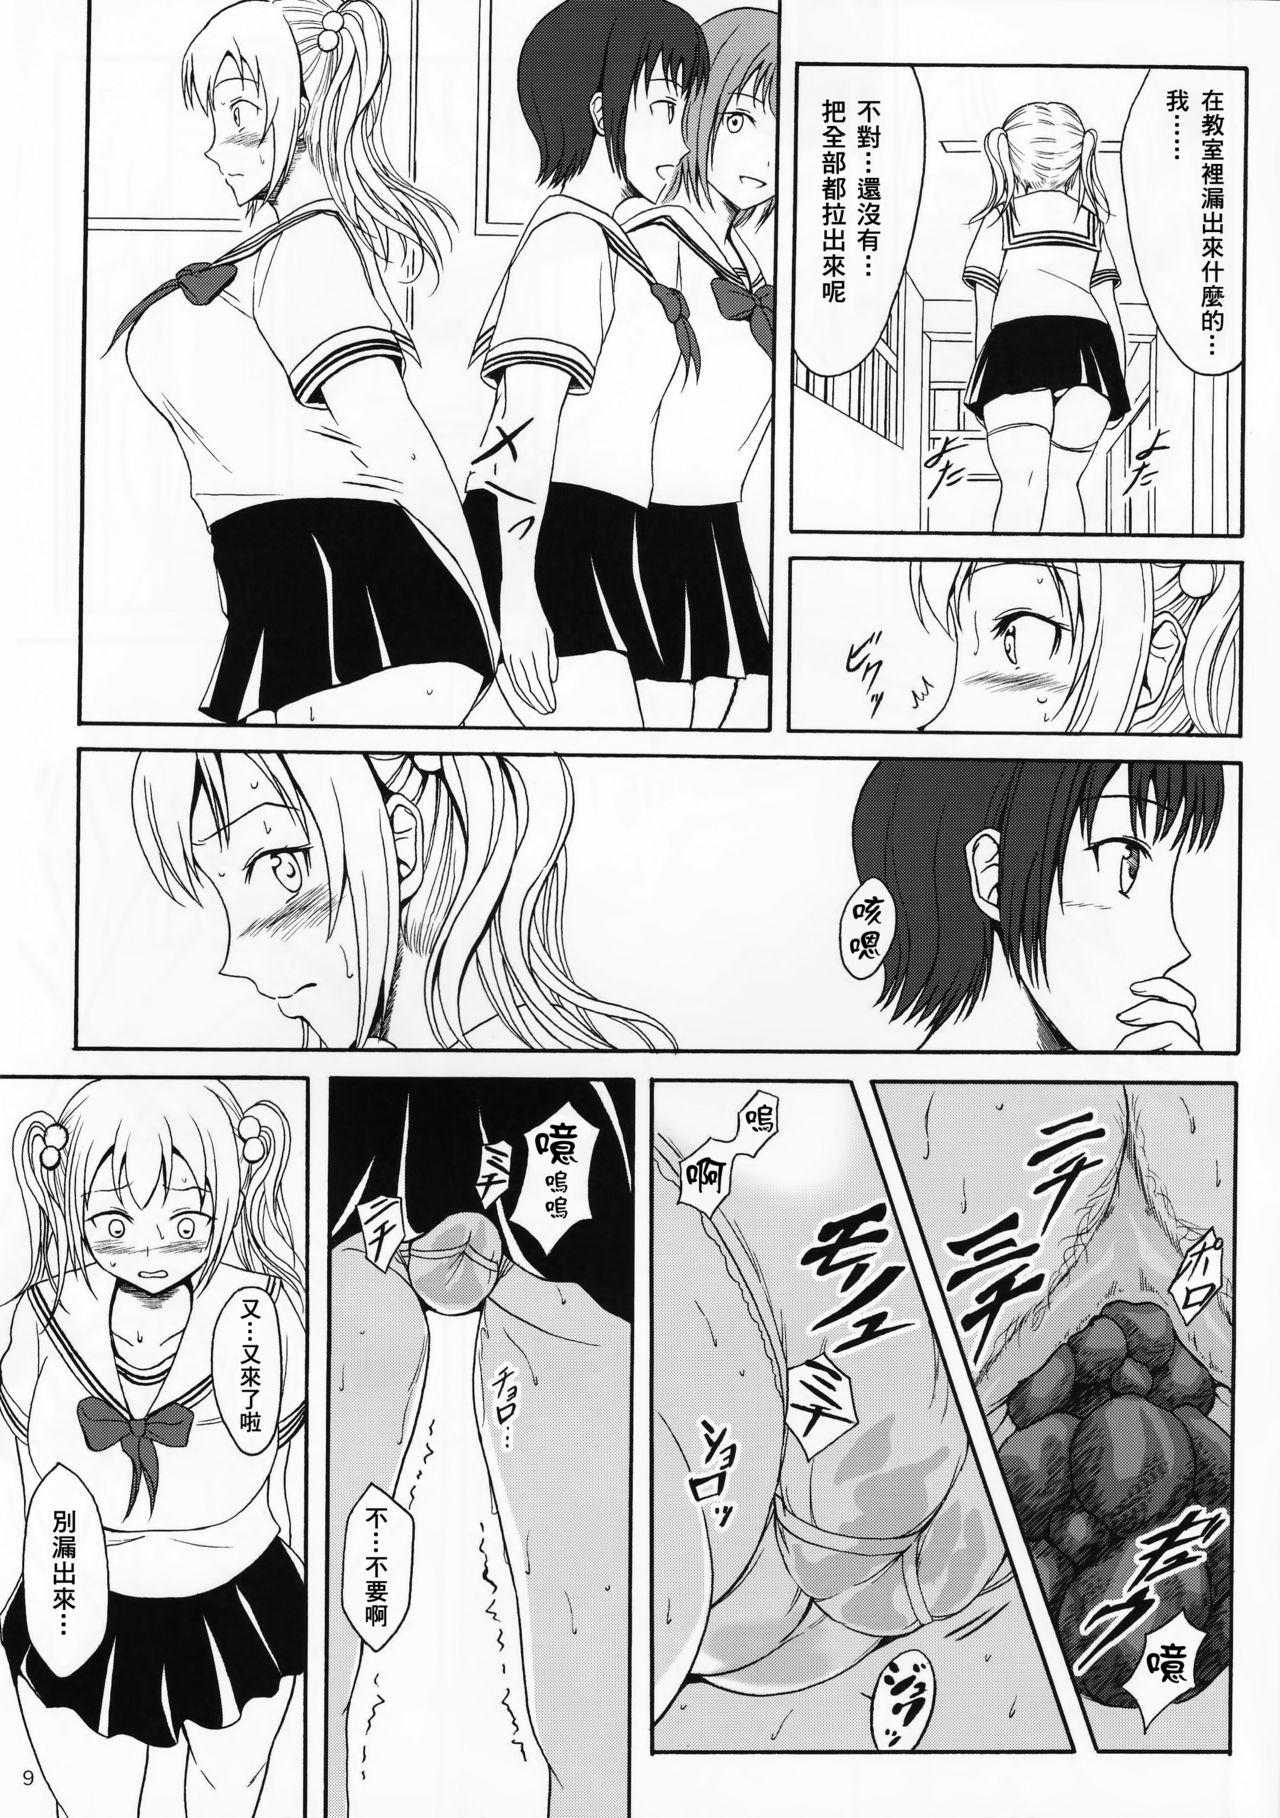 Tats Haisetsu Shoujo 9 Shoujo wa Shippai o Kurikaesu Doggy Style Porn - Page 8